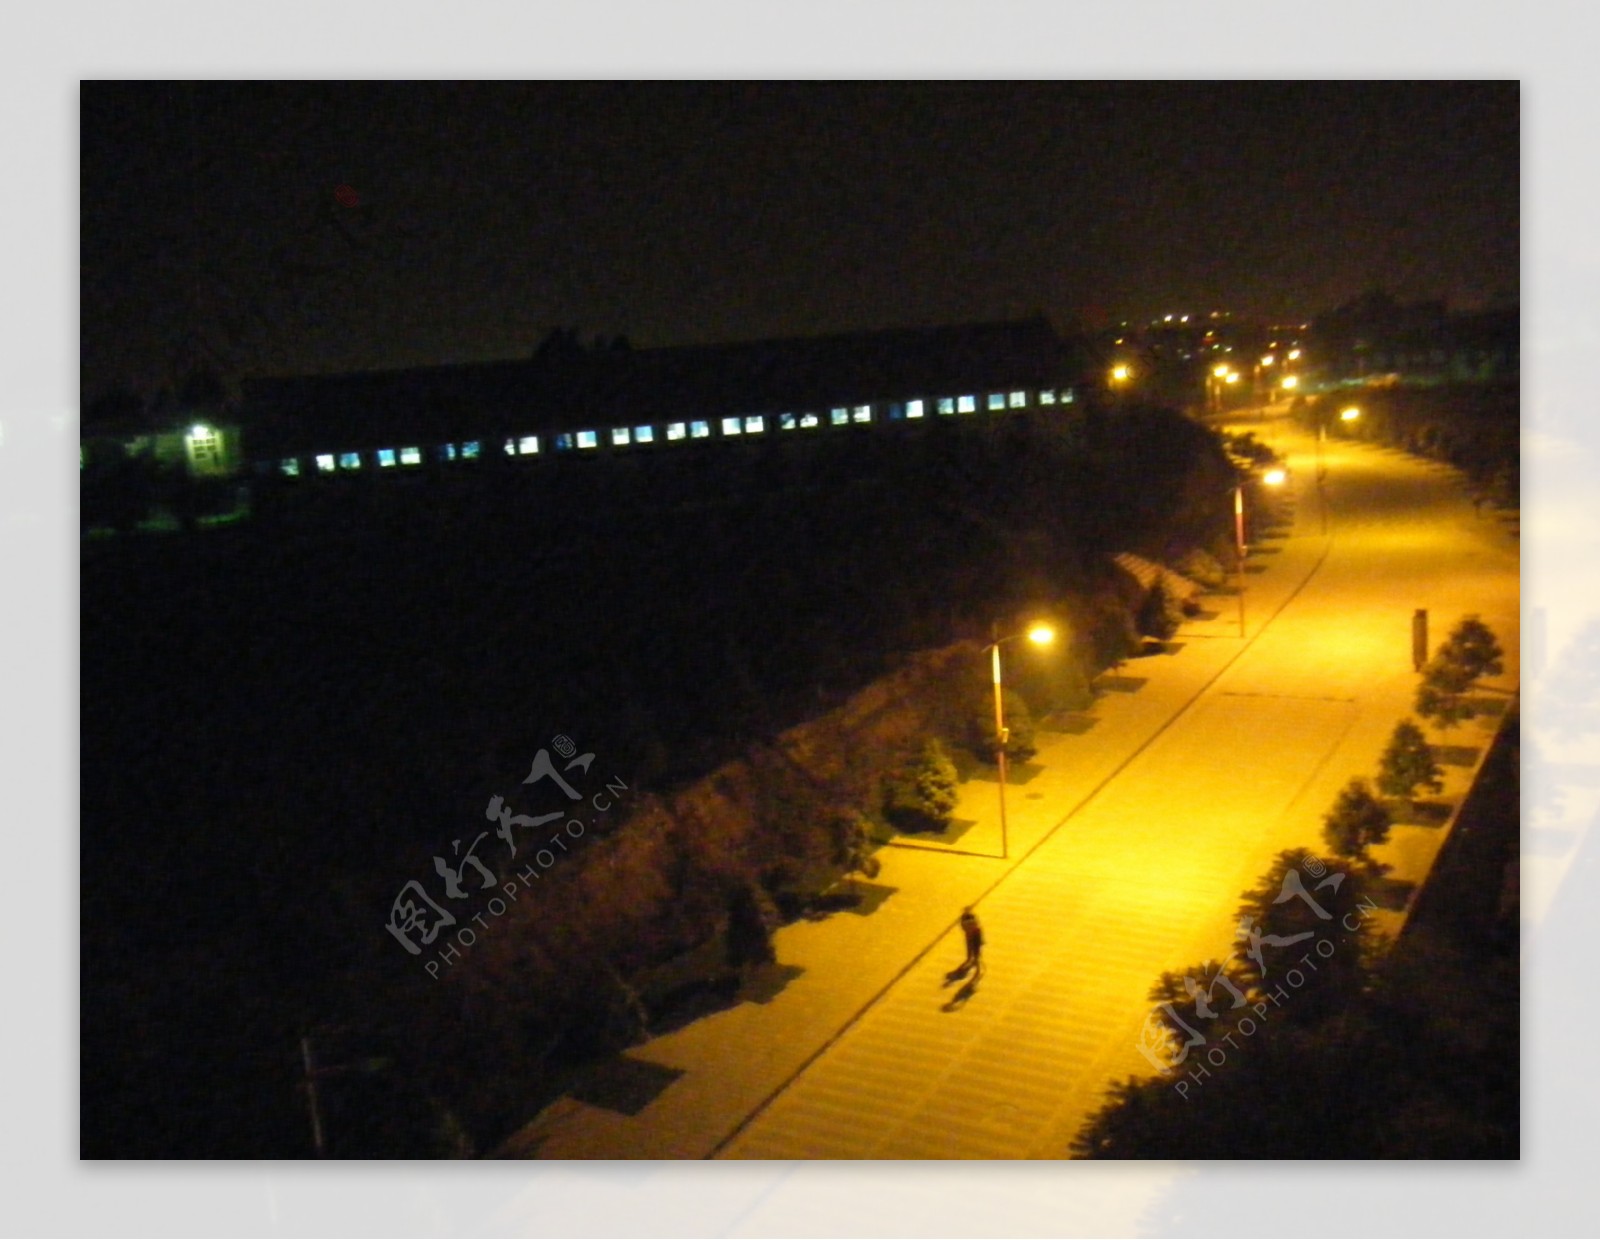 云南大学新校区夜路图片